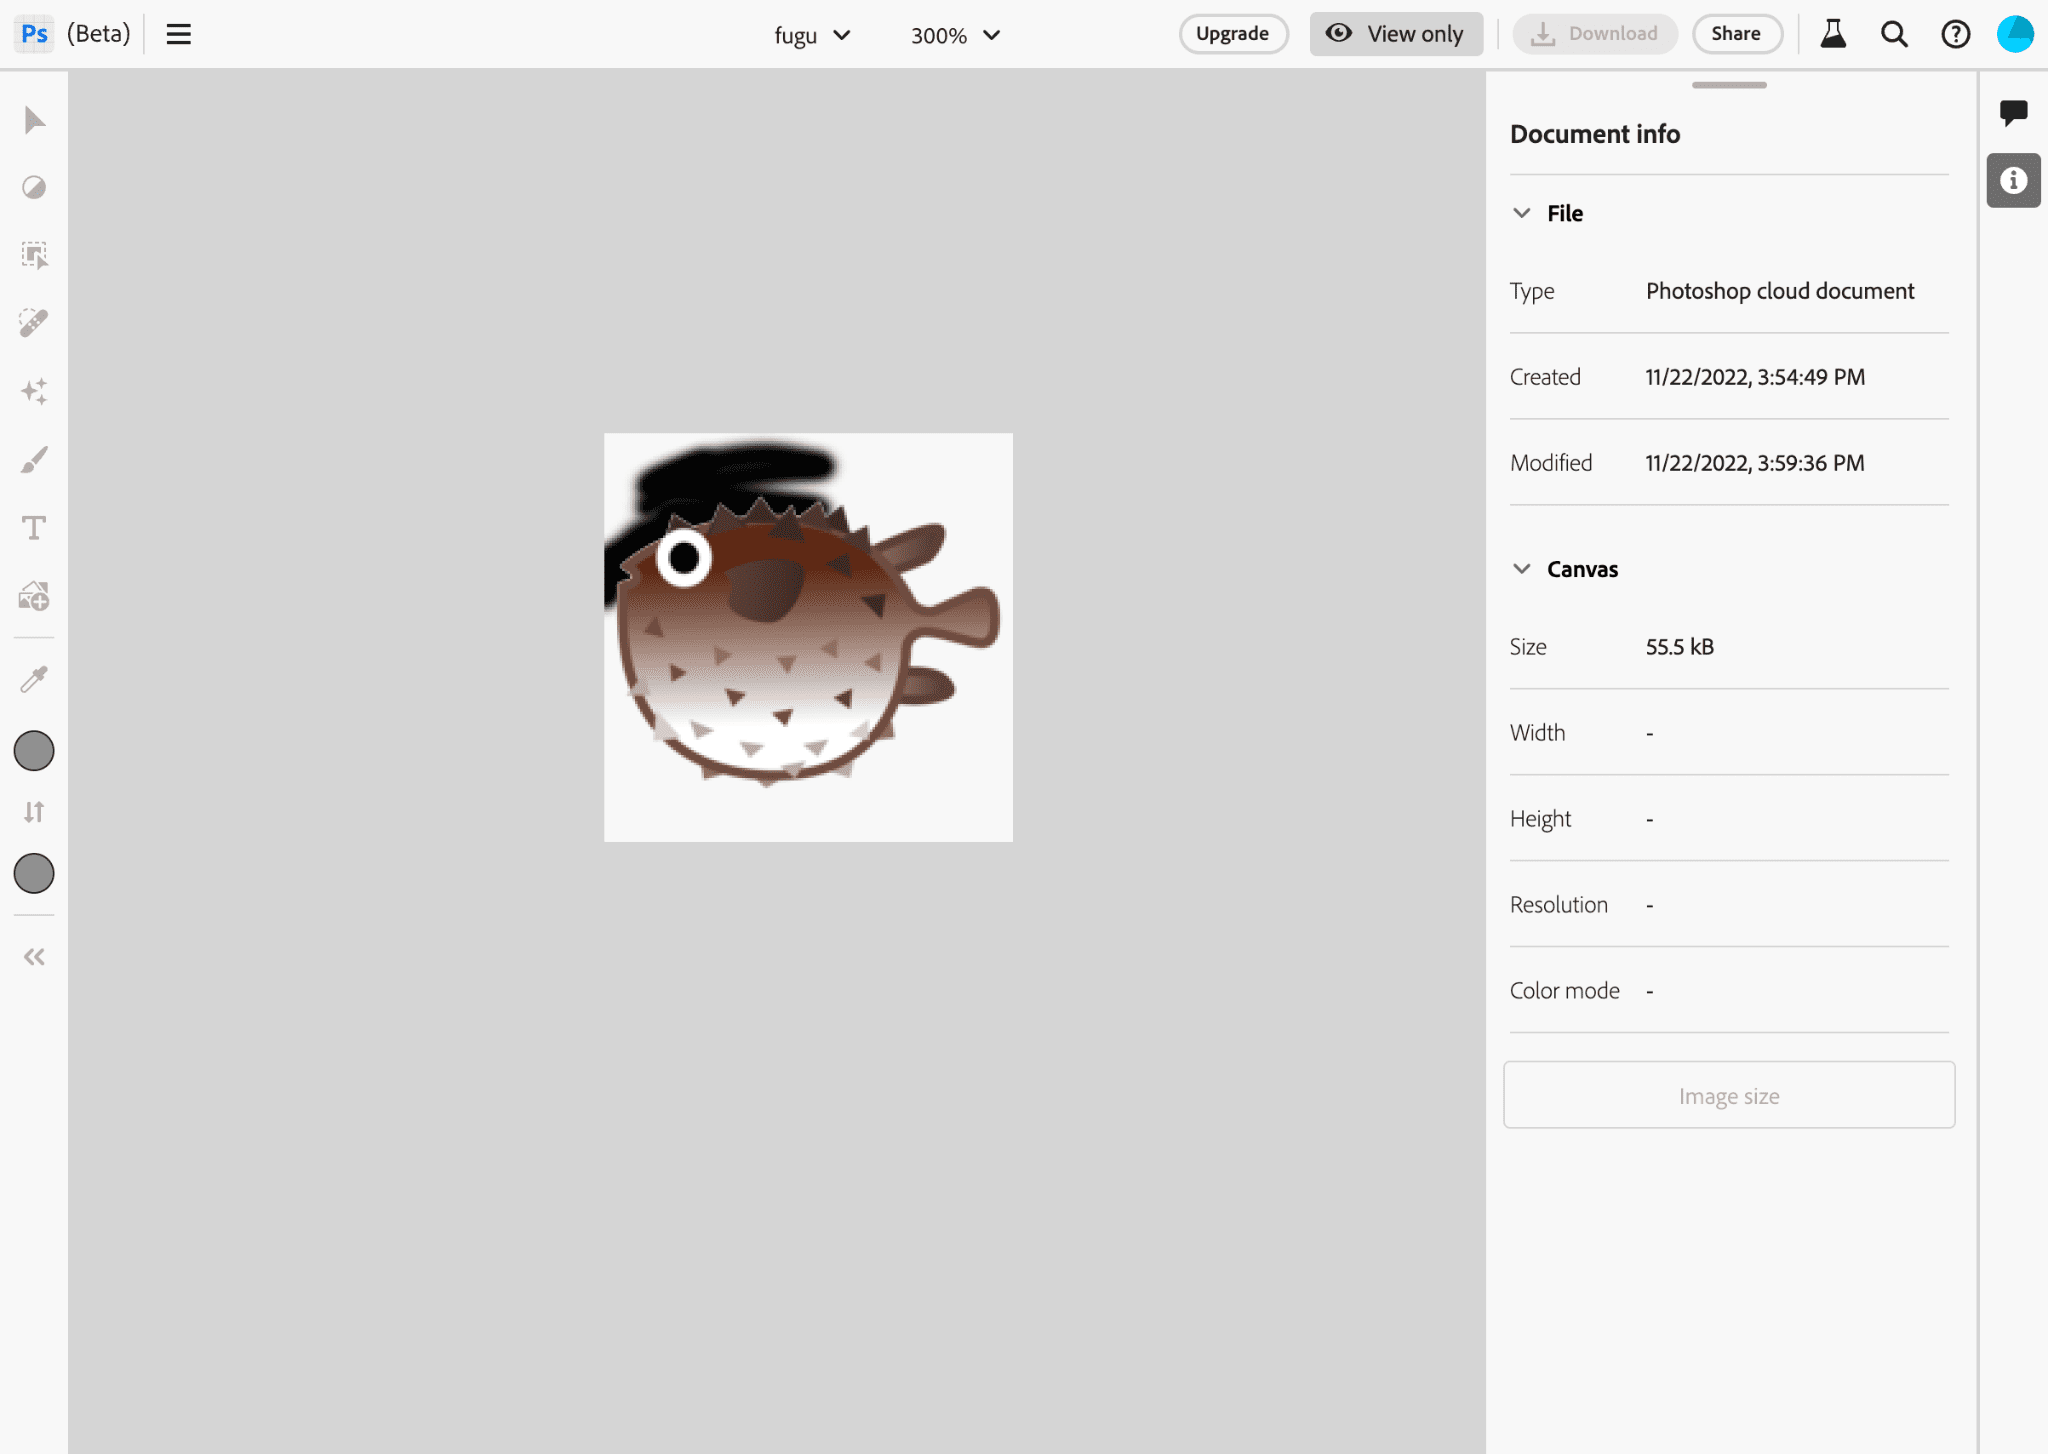 Aplikasi Photoshop saat mengedit gambar logo Project Fugu.